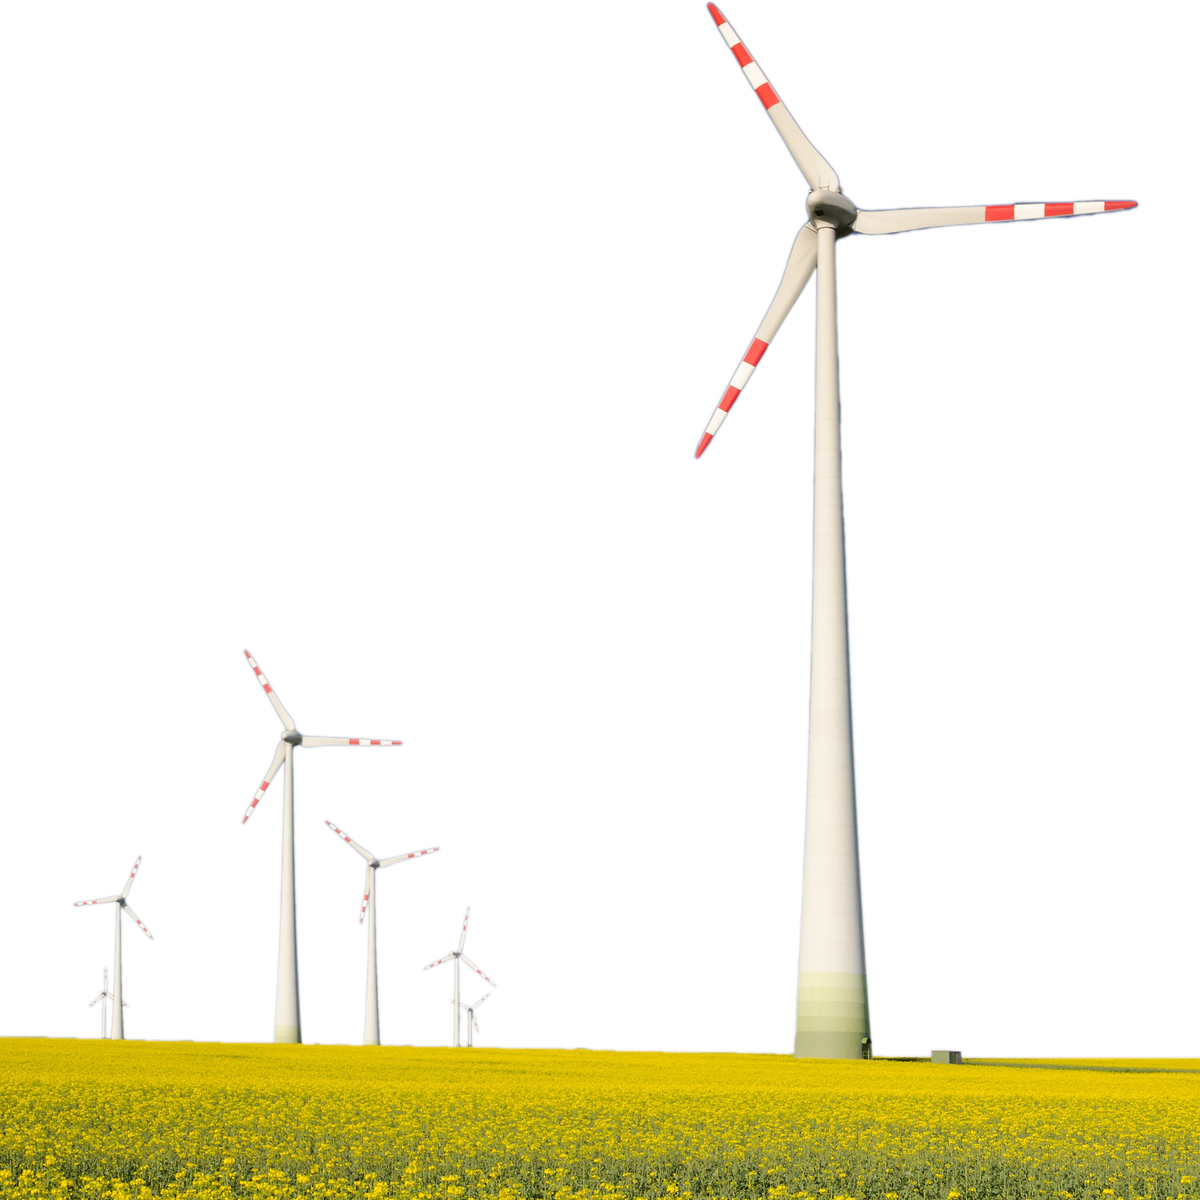 Wind turbines on a field